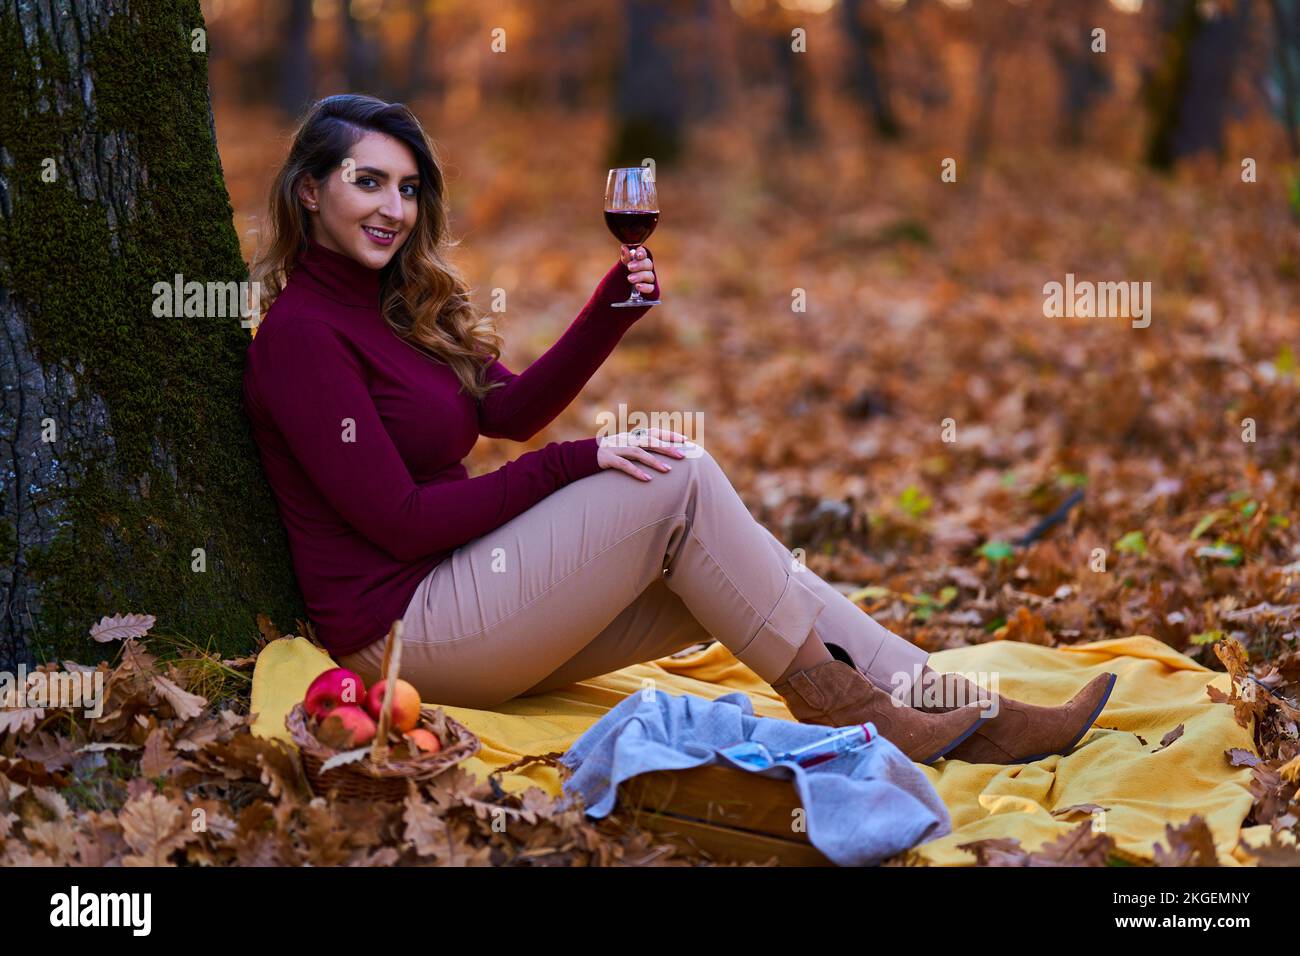 Bella giovane donna indiana di dimensioni più grandi che si gode un bicchiere di vino rosso nella foresta di querce al tramonto Foto Stock